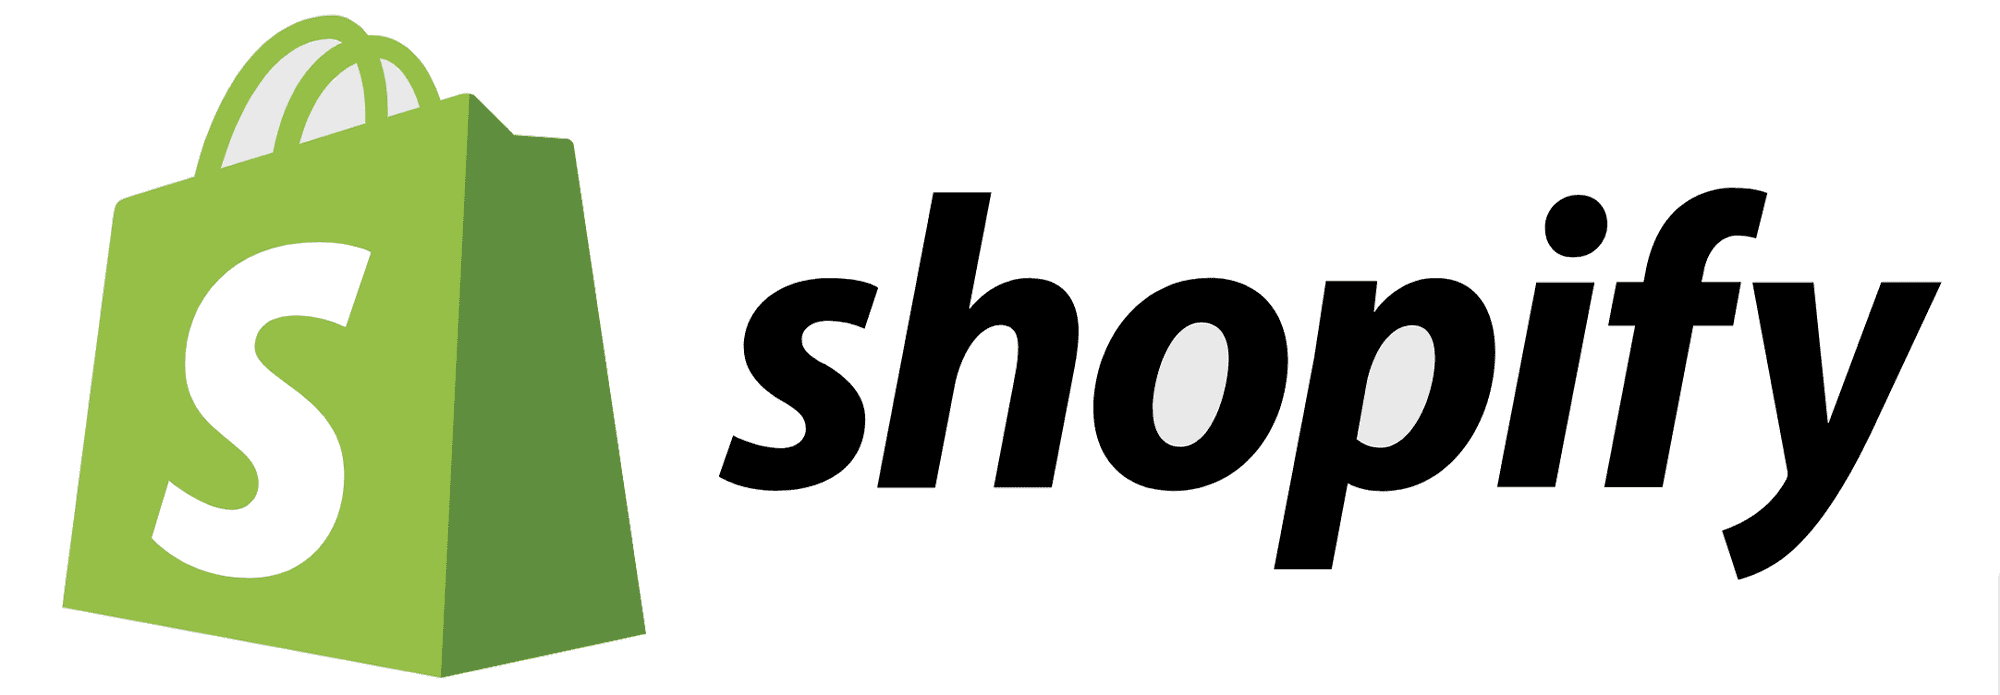 medivendis oHG - Ihre Agentur für Shopify und dessen Anwendungen